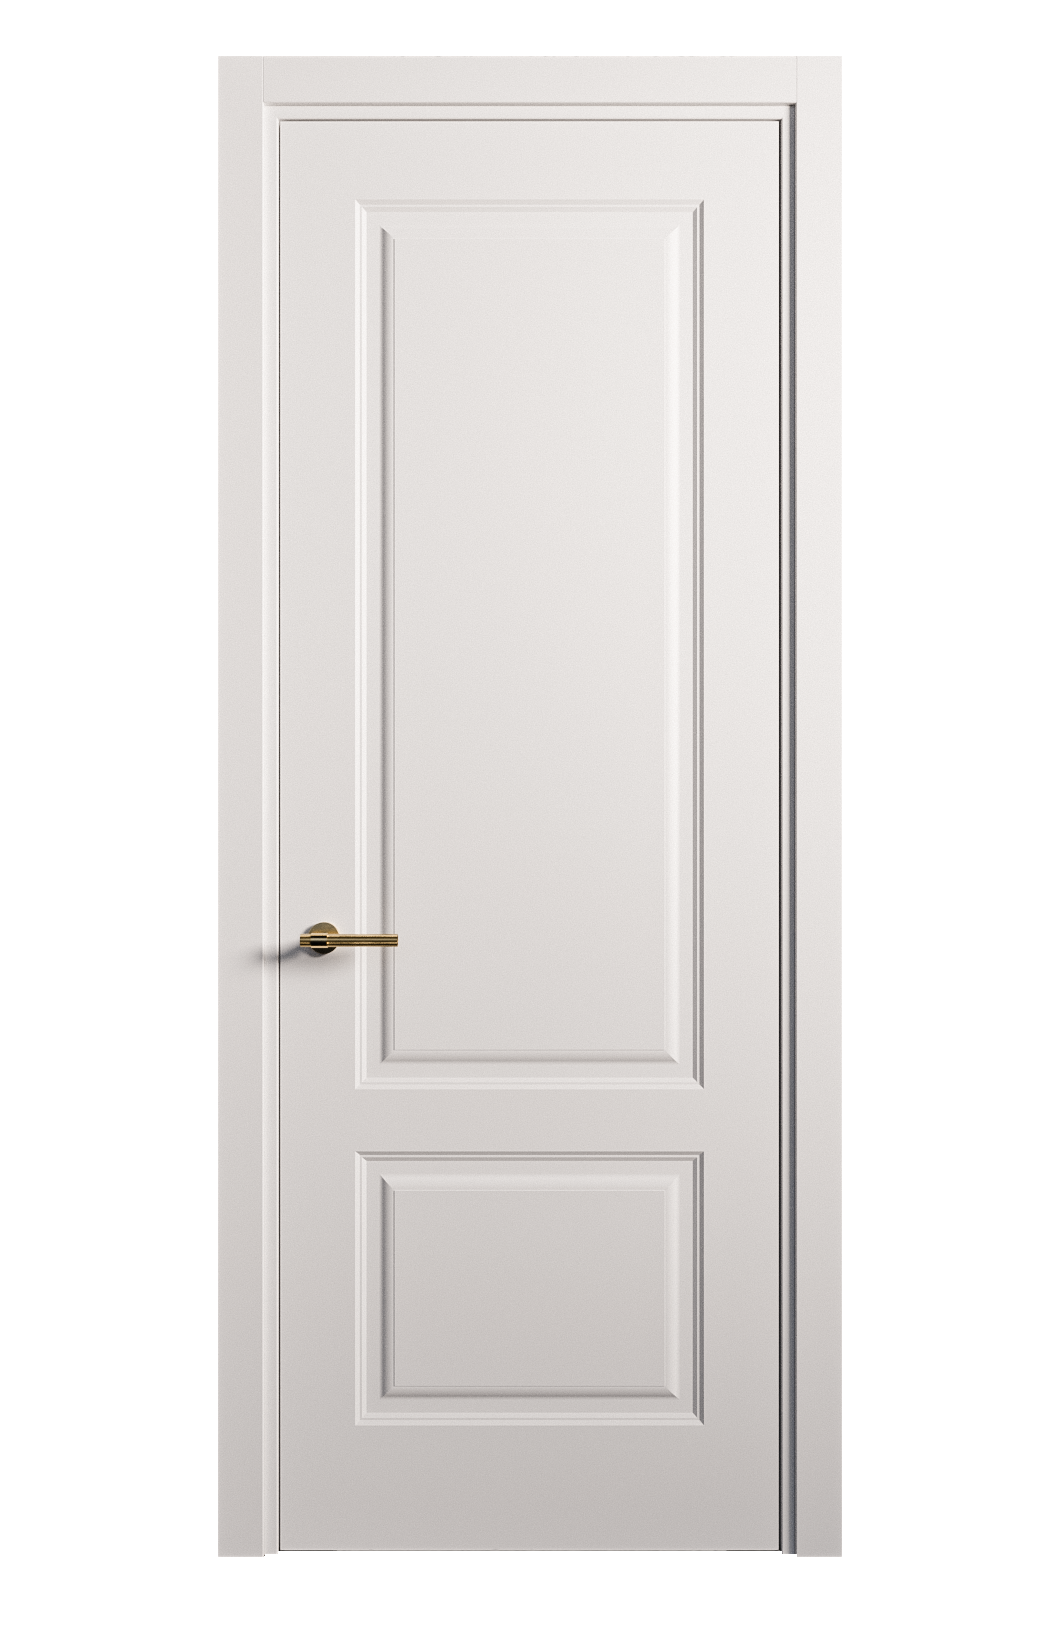 Межкомнатная дверь Вита-1 глухая эмаль ral 9003 26313